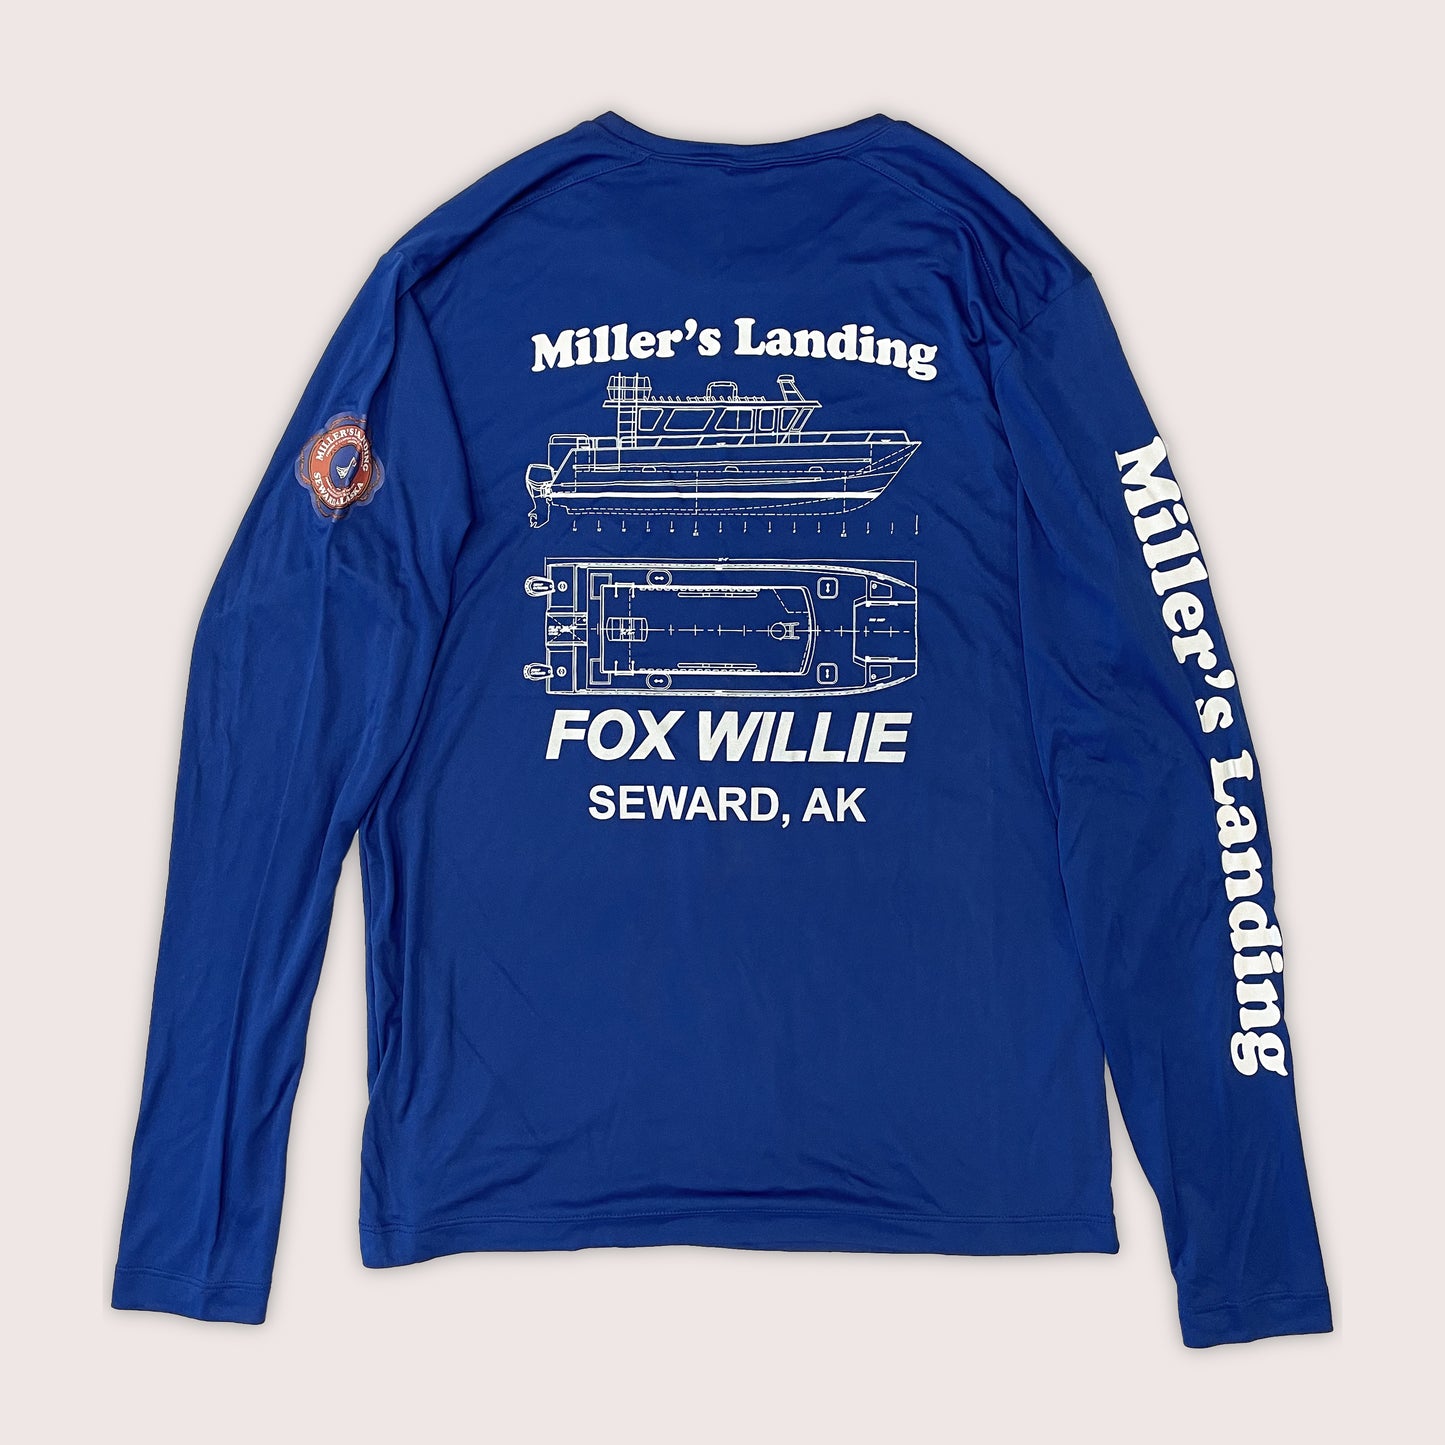 NEW! Miller's Landing Fox Willie Posi-UV Pro Long Sleeve Shirts